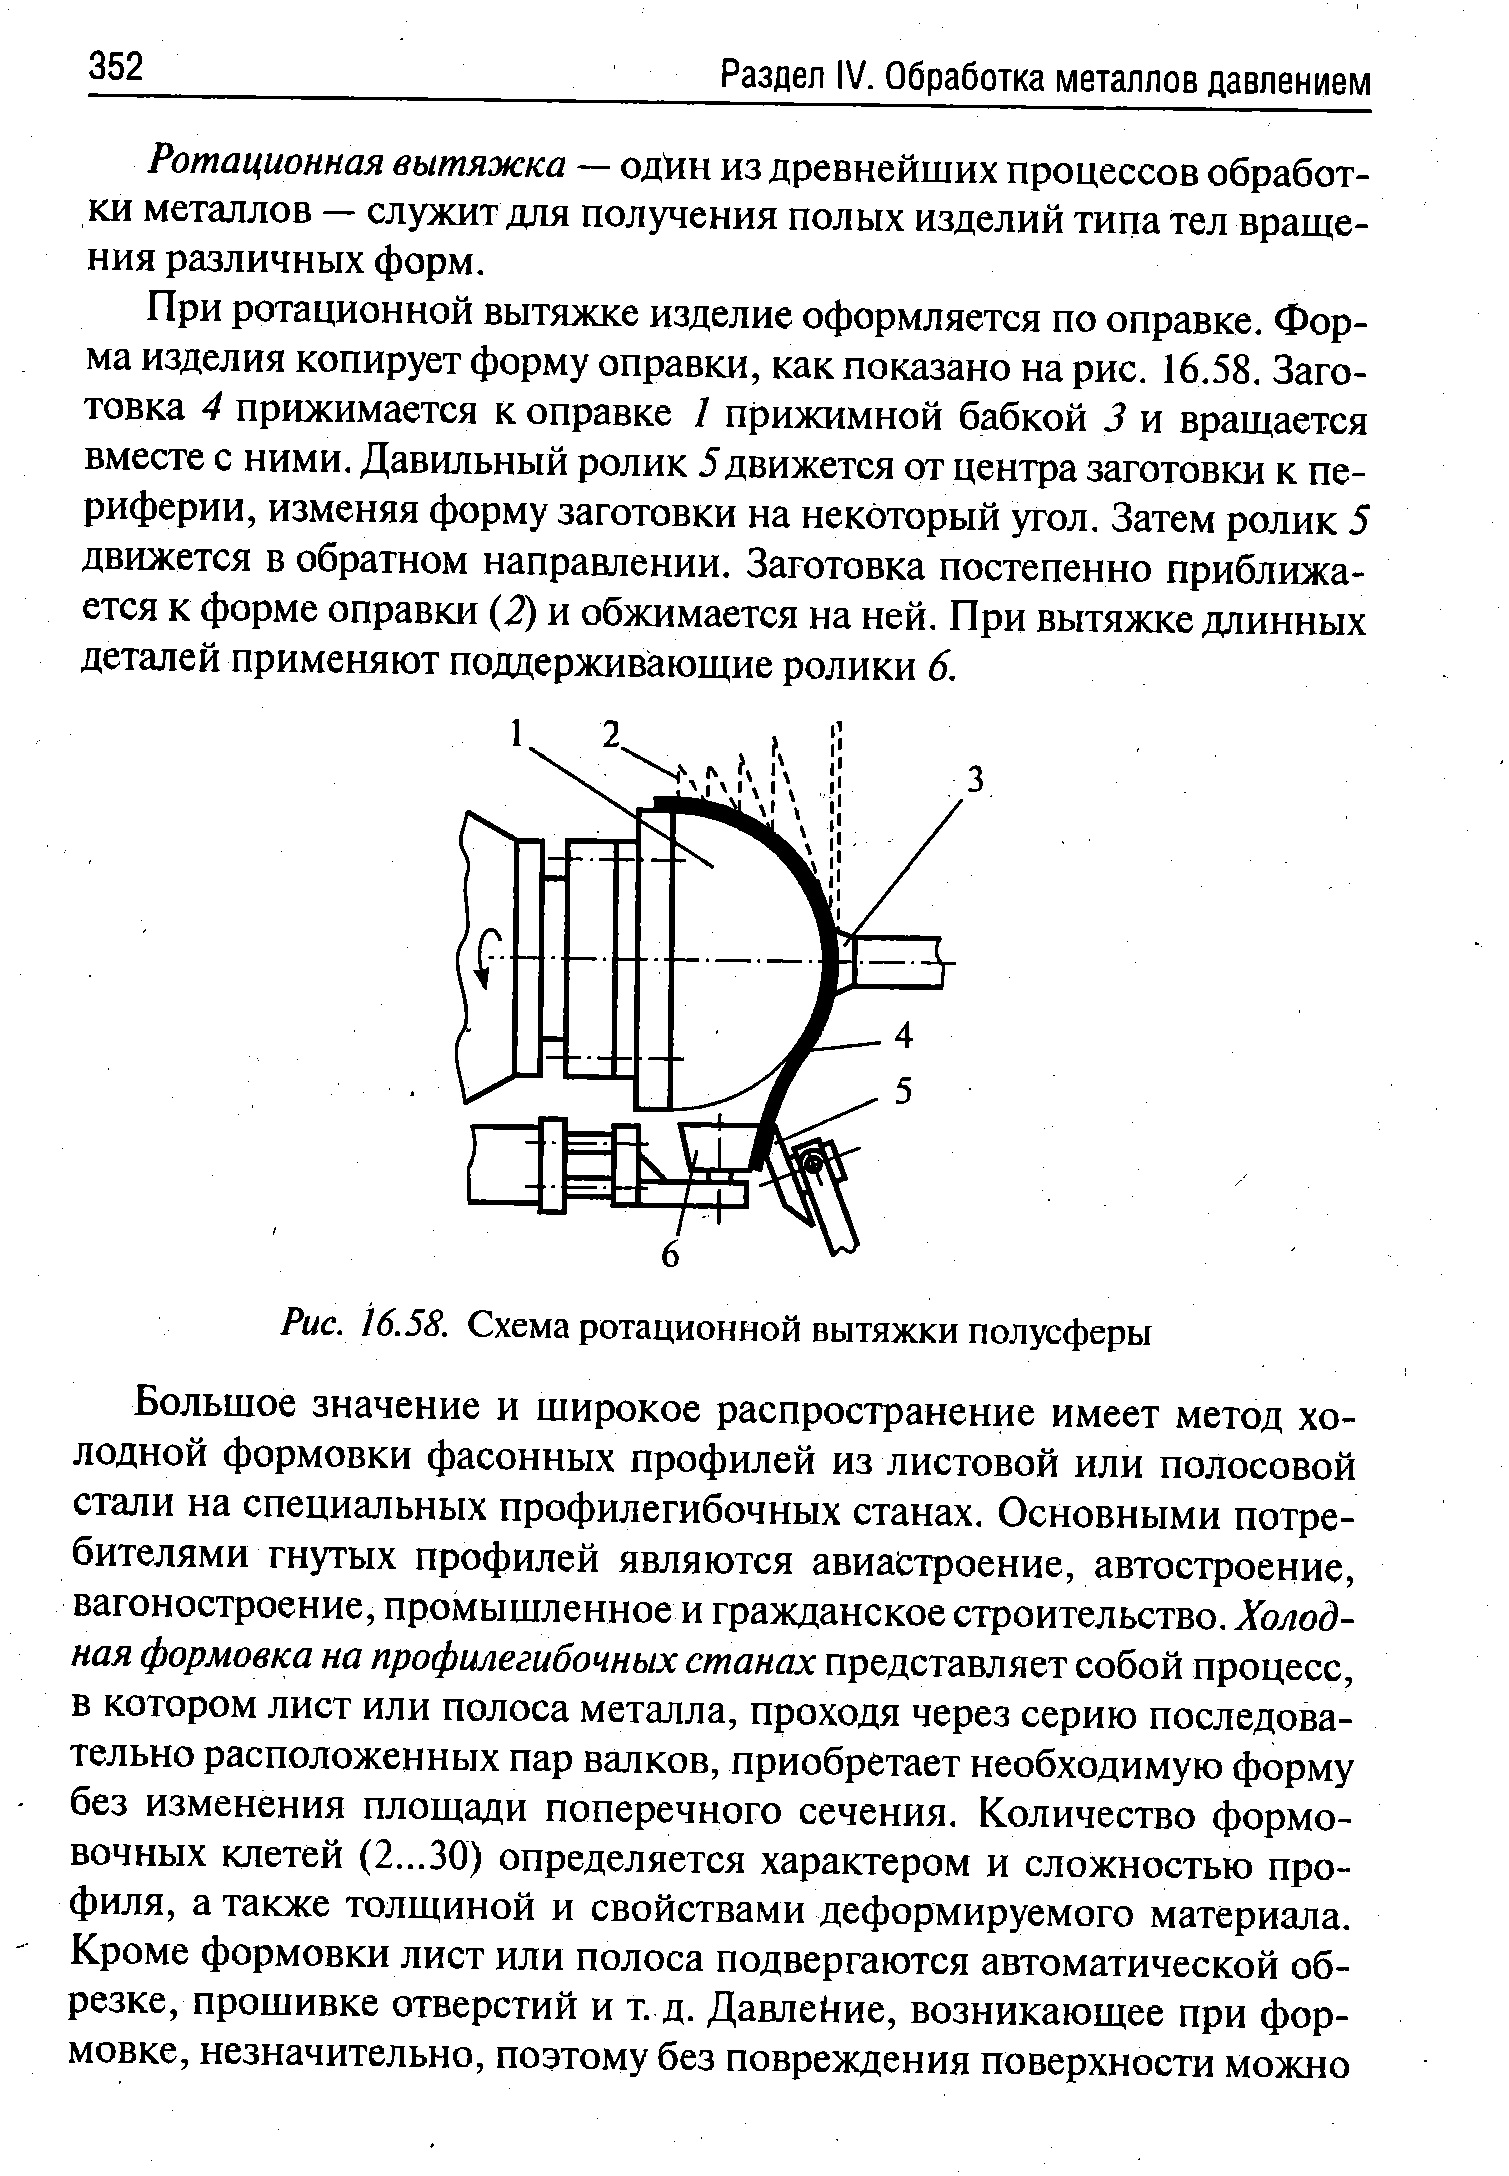 Рис. 16.58. Схема ротационной вытяжки полусферы
